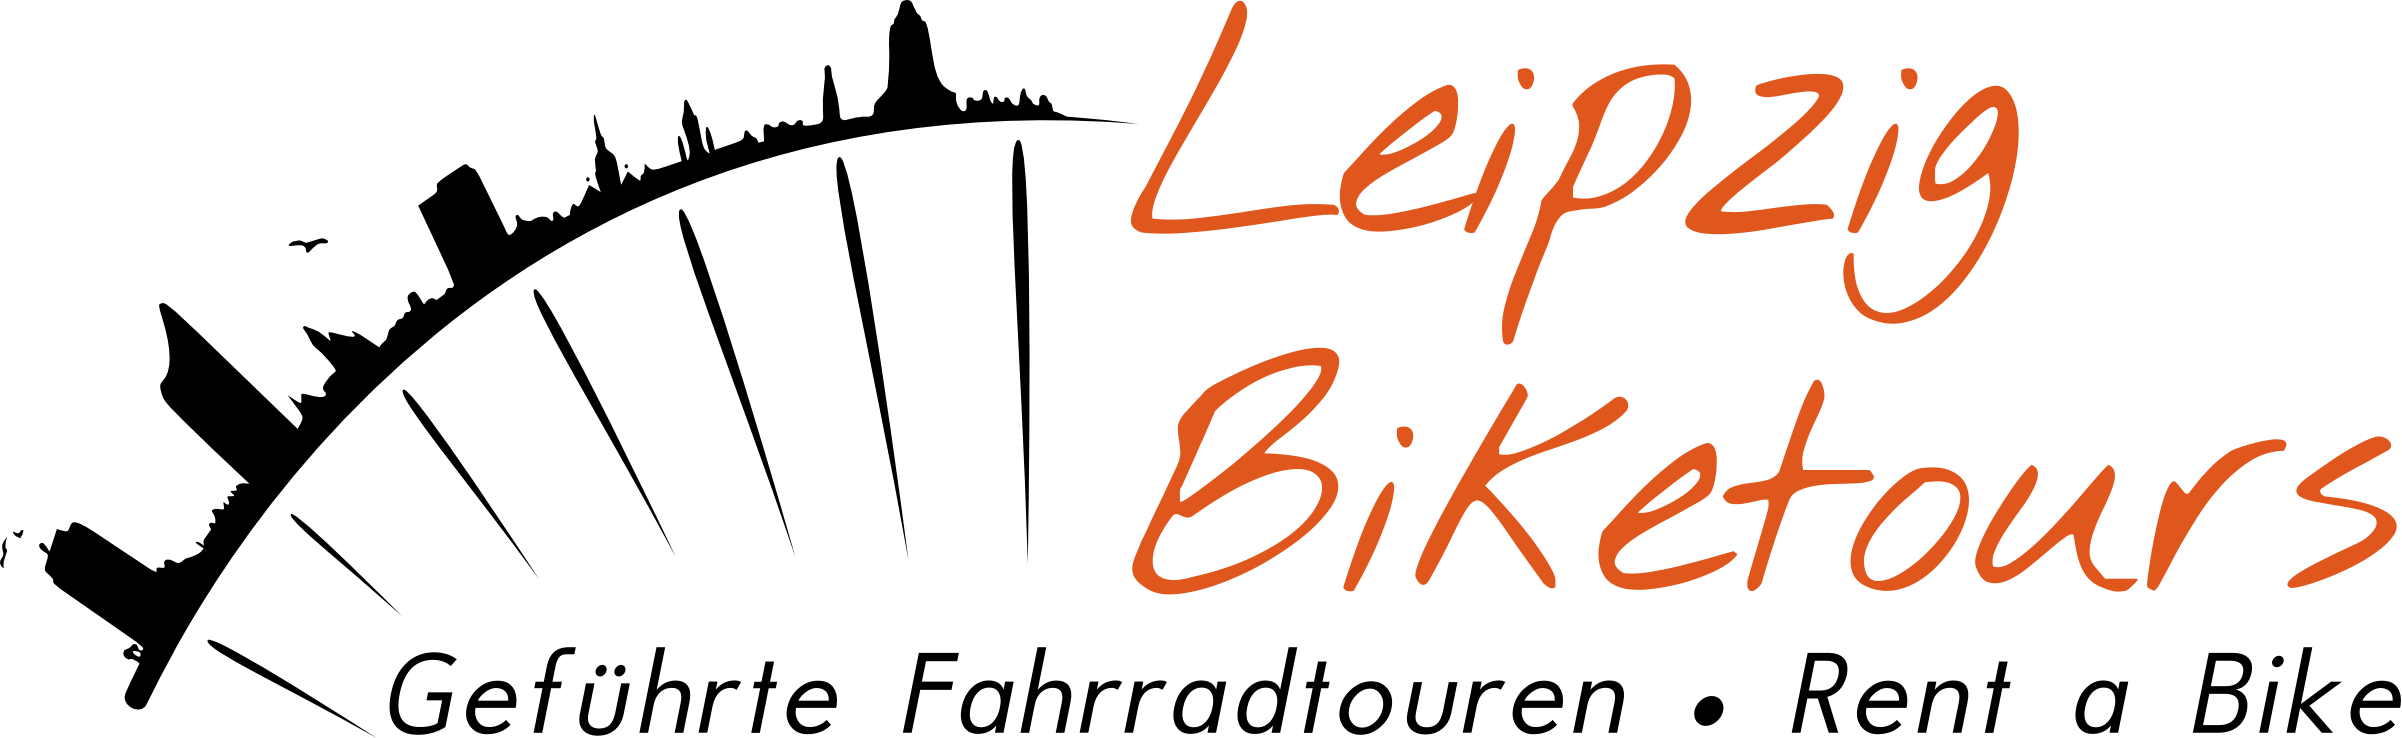 Leipzig-Biketours